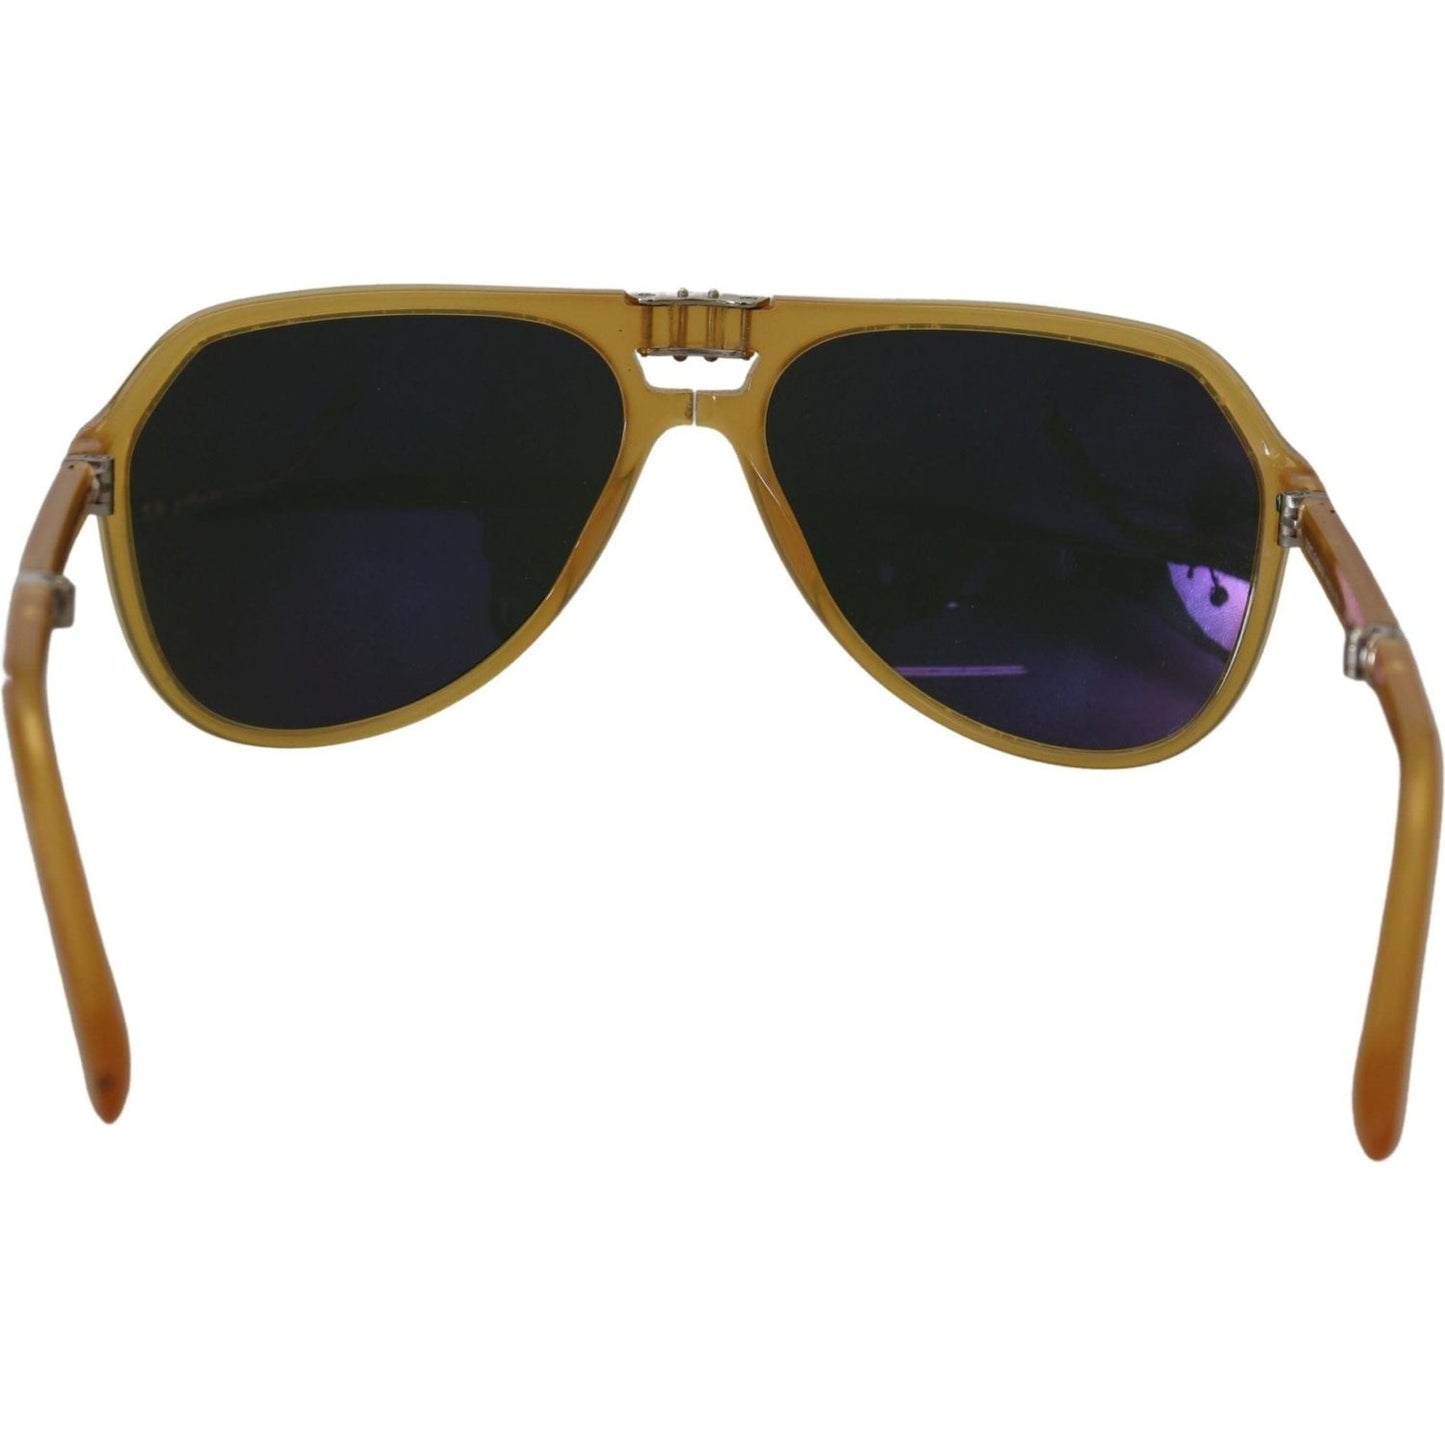 Dolce & Gabbana Chic Yellow Aviator Acetate Sunglasses yellow-acetate-black-lens-aviator-dg4196-sunglasses